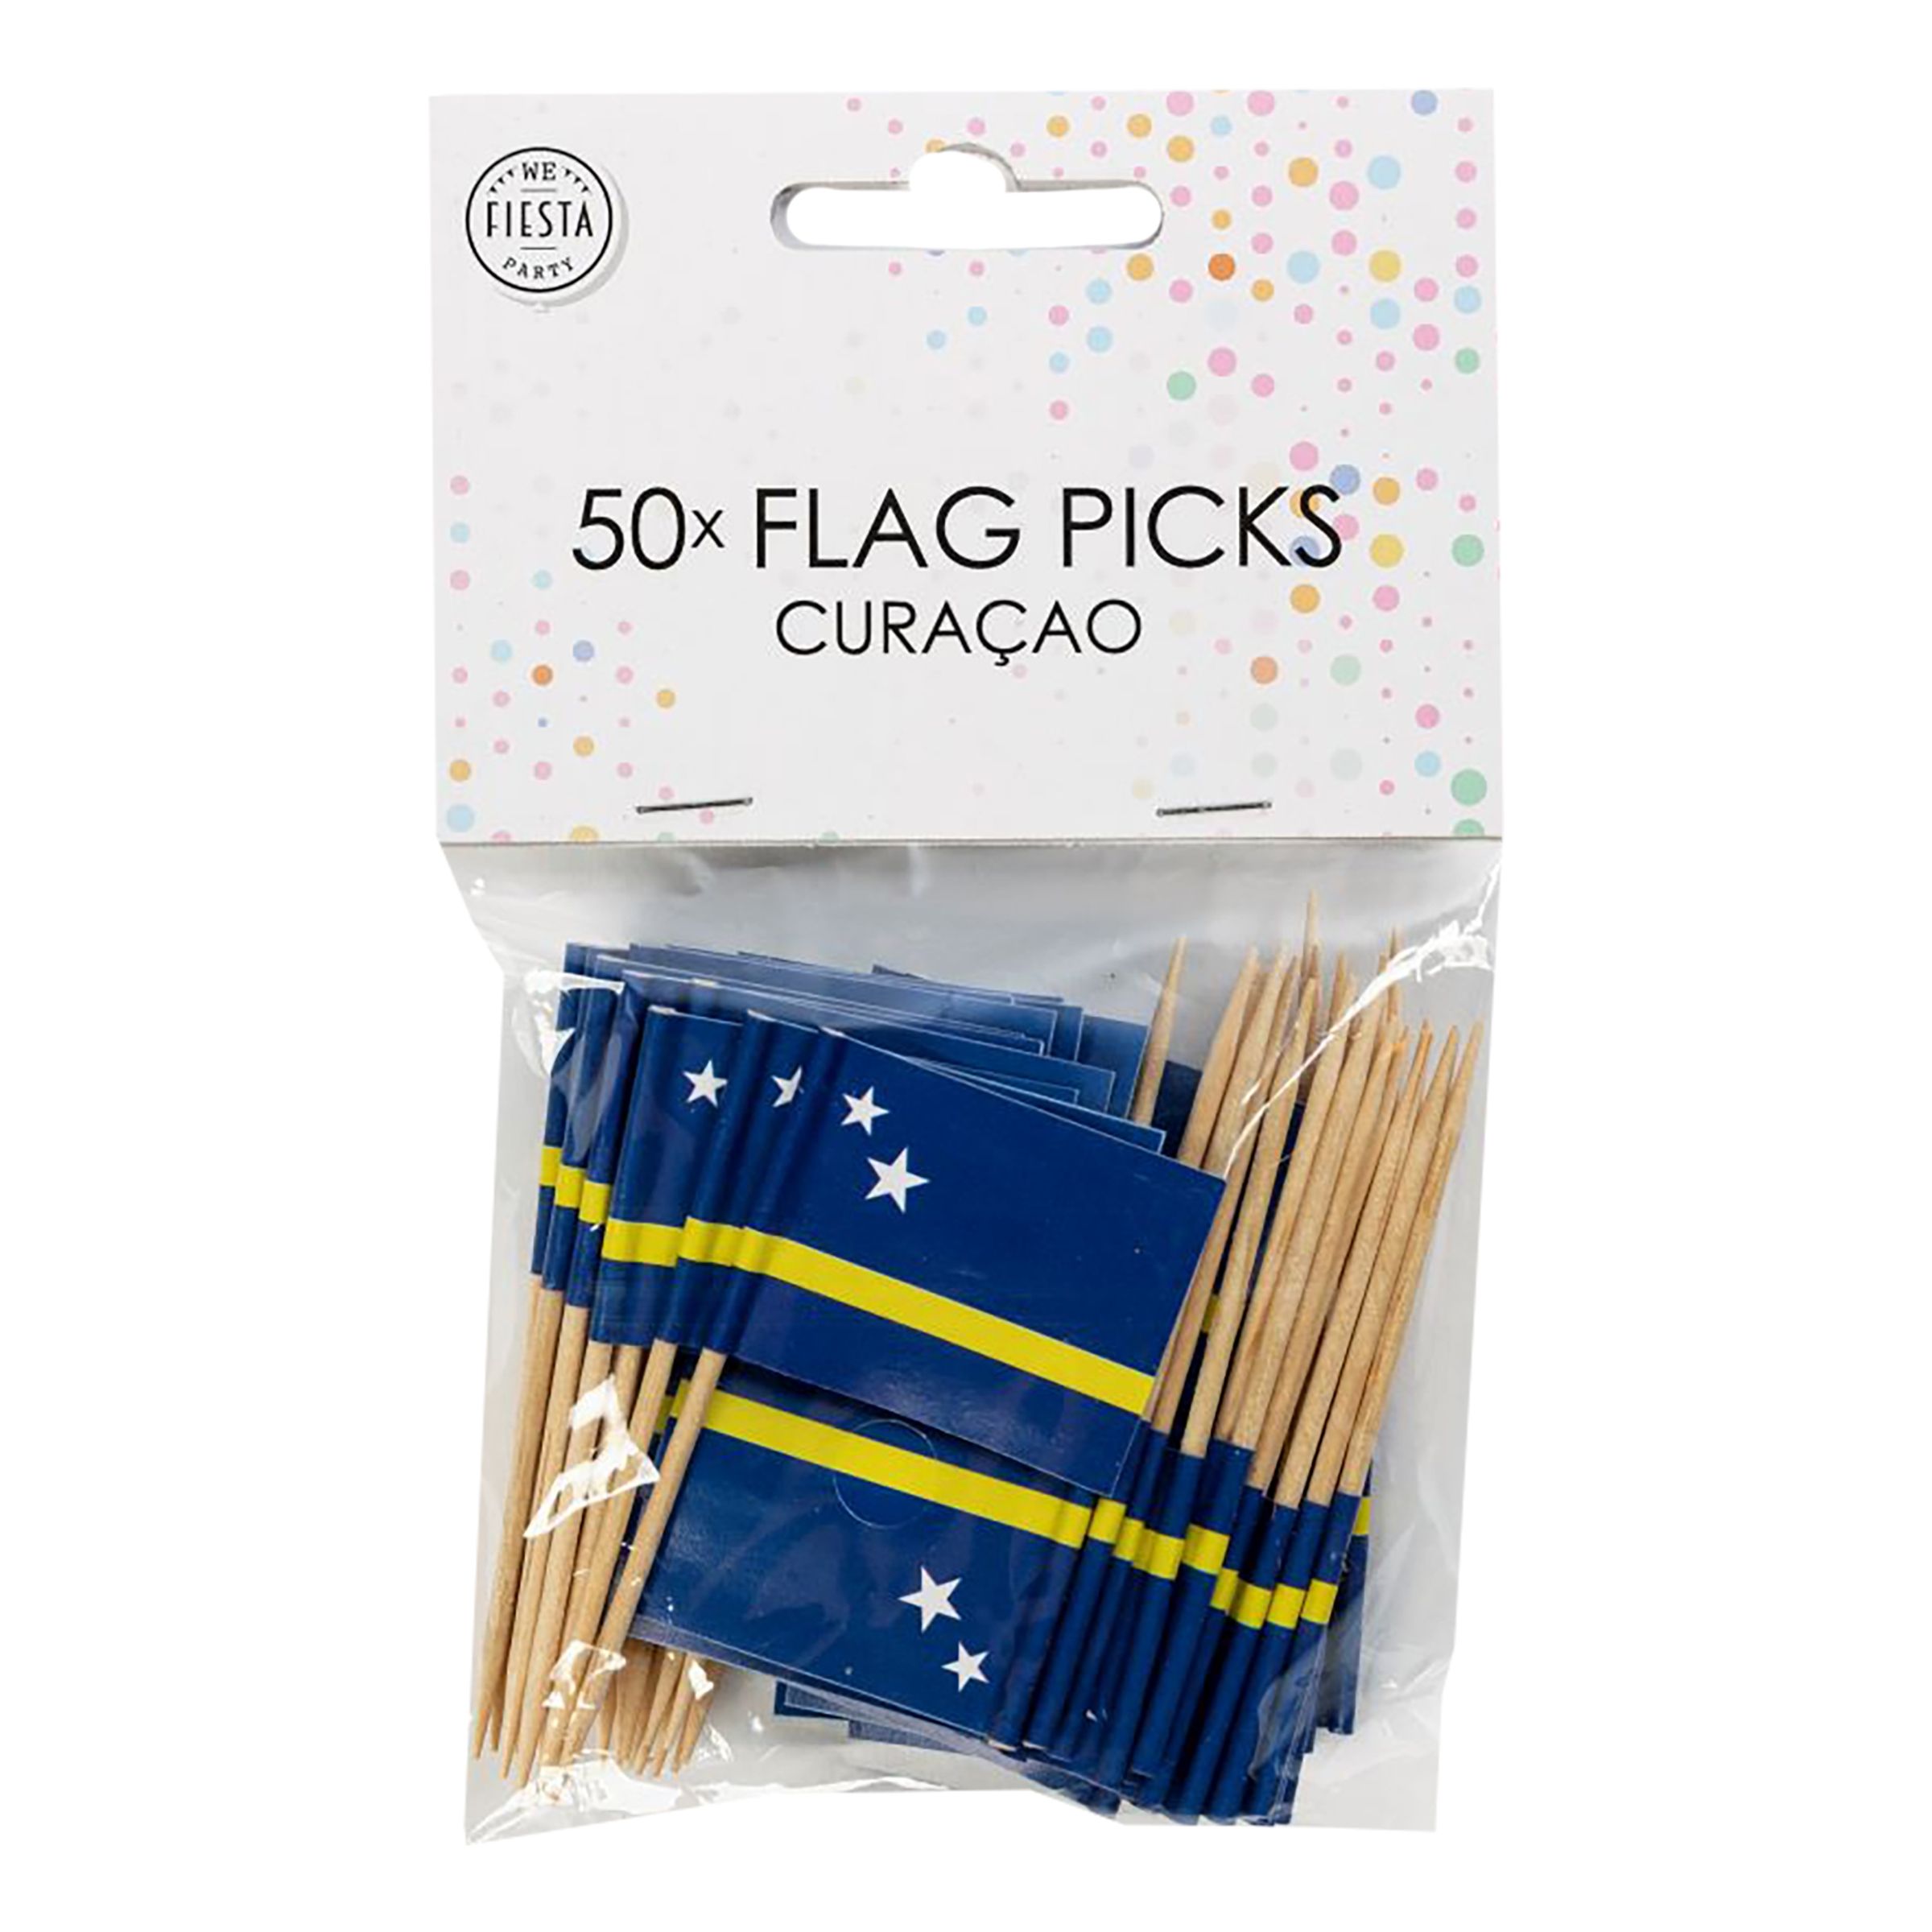 Cocktailflaggor Curacao - 50-pack